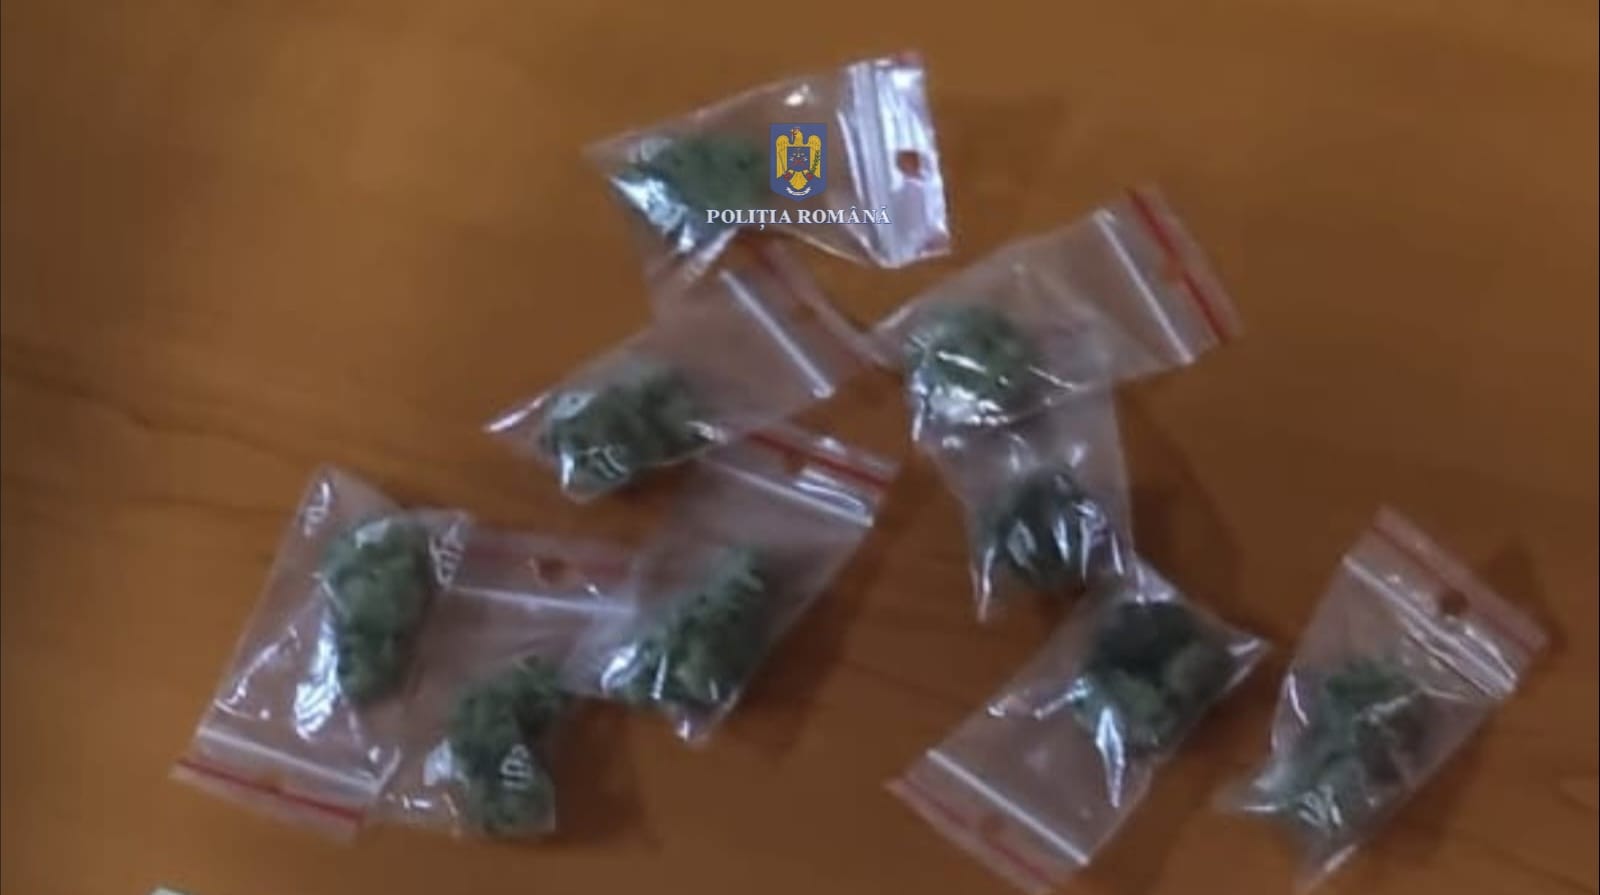 În borsetă, poliţiştii au găsit 9 punguțe din material plastic ce conțineau fragmente vegetale de culoare verde – olive